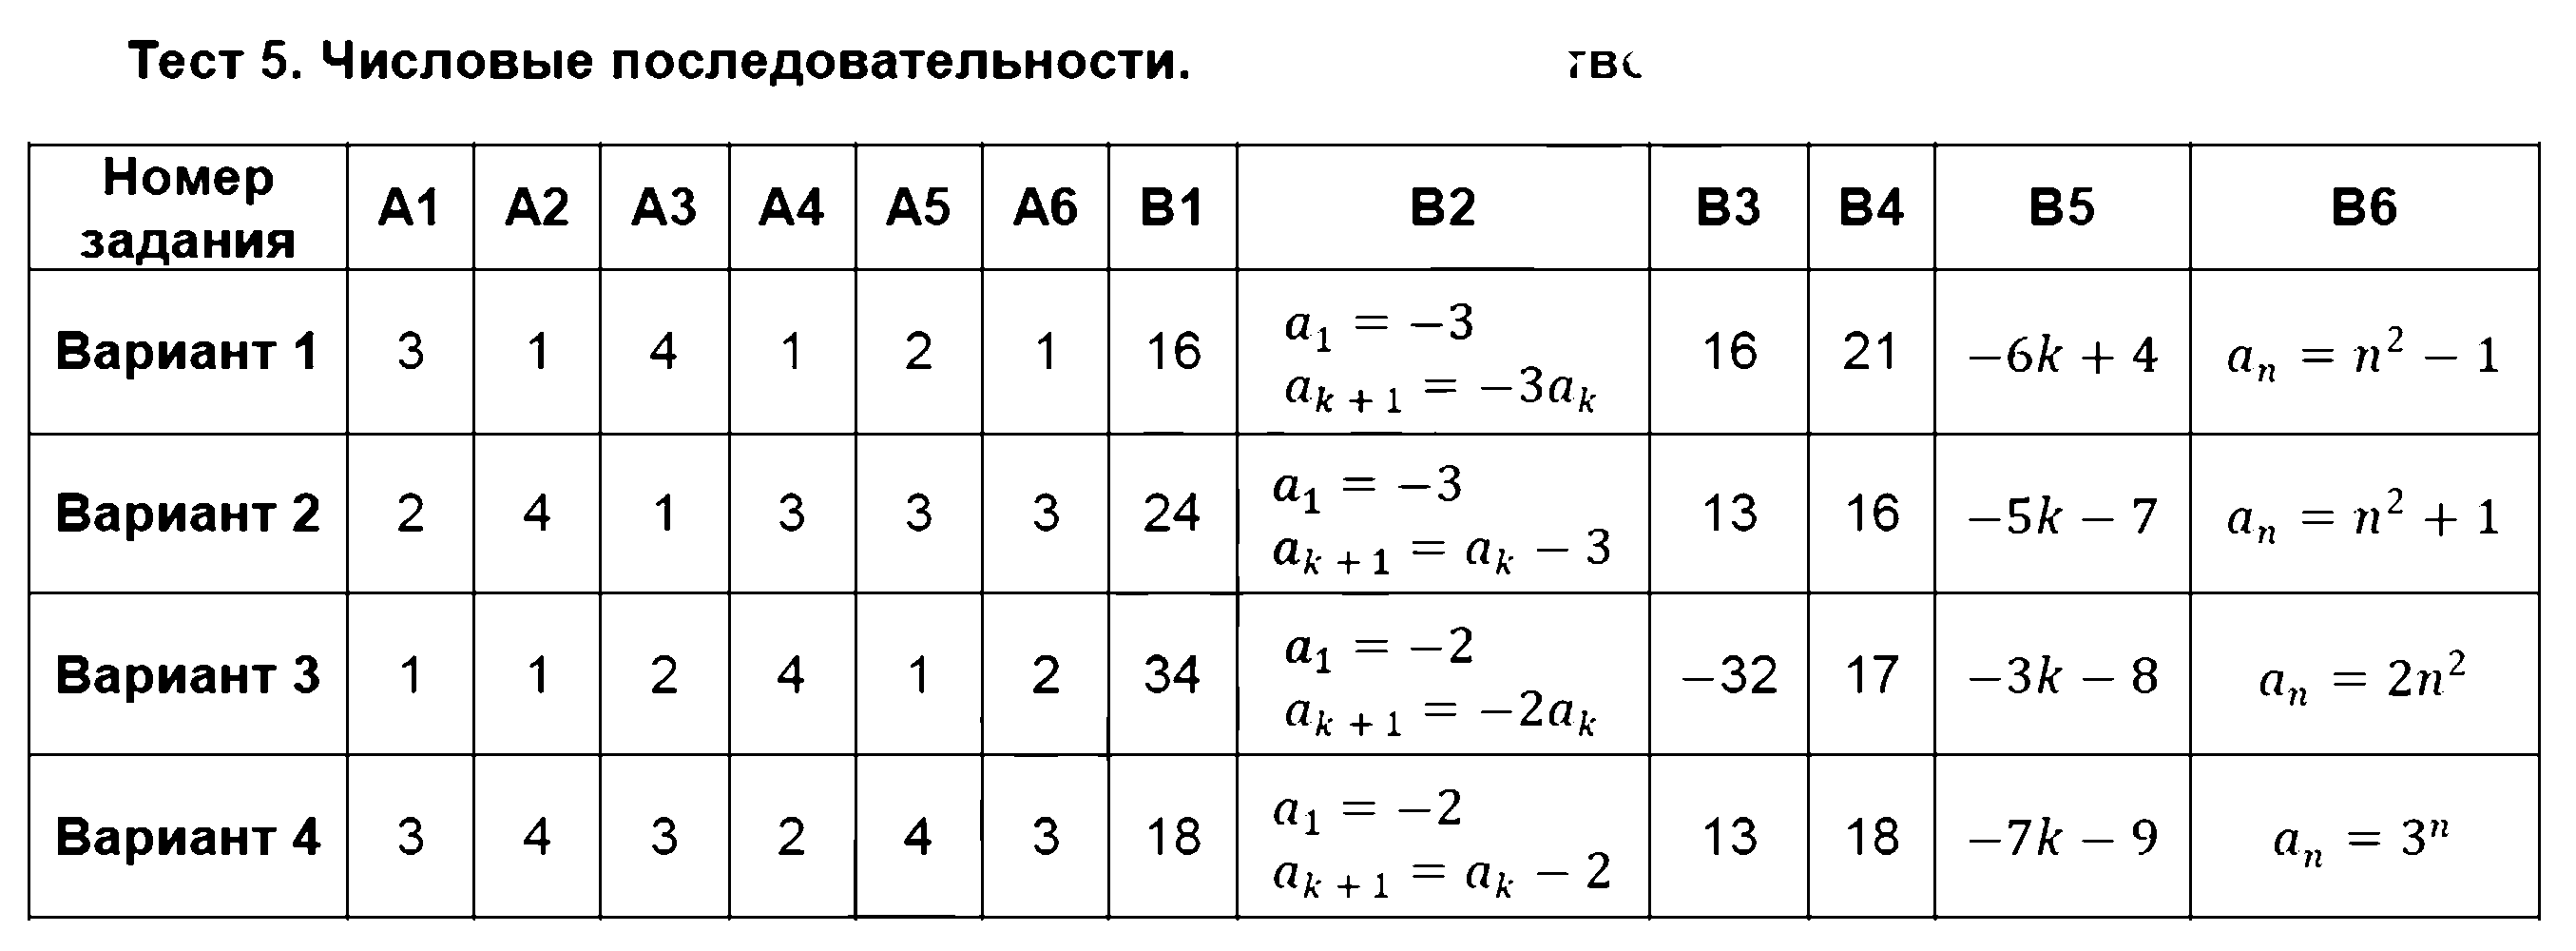 ГДЗ Алгебра 9 класс - Тест 5. Числовые последовательности